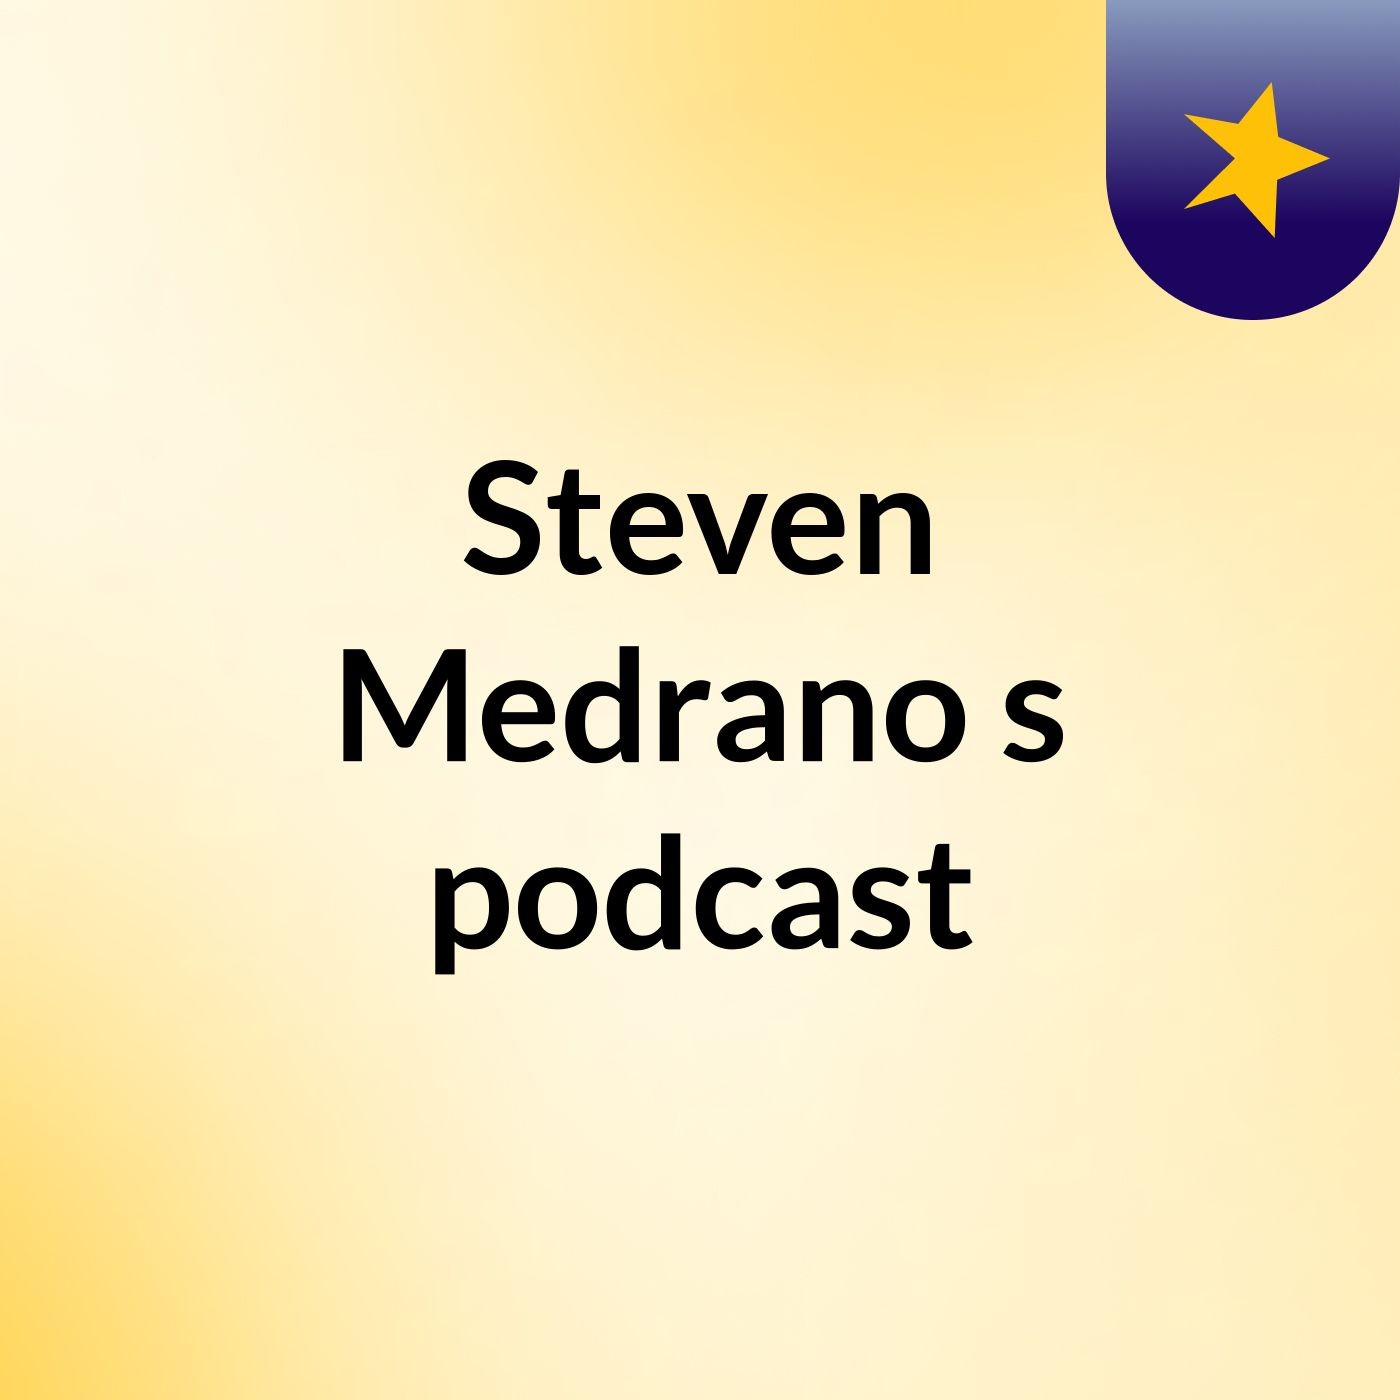 Steven Medrano's podcast